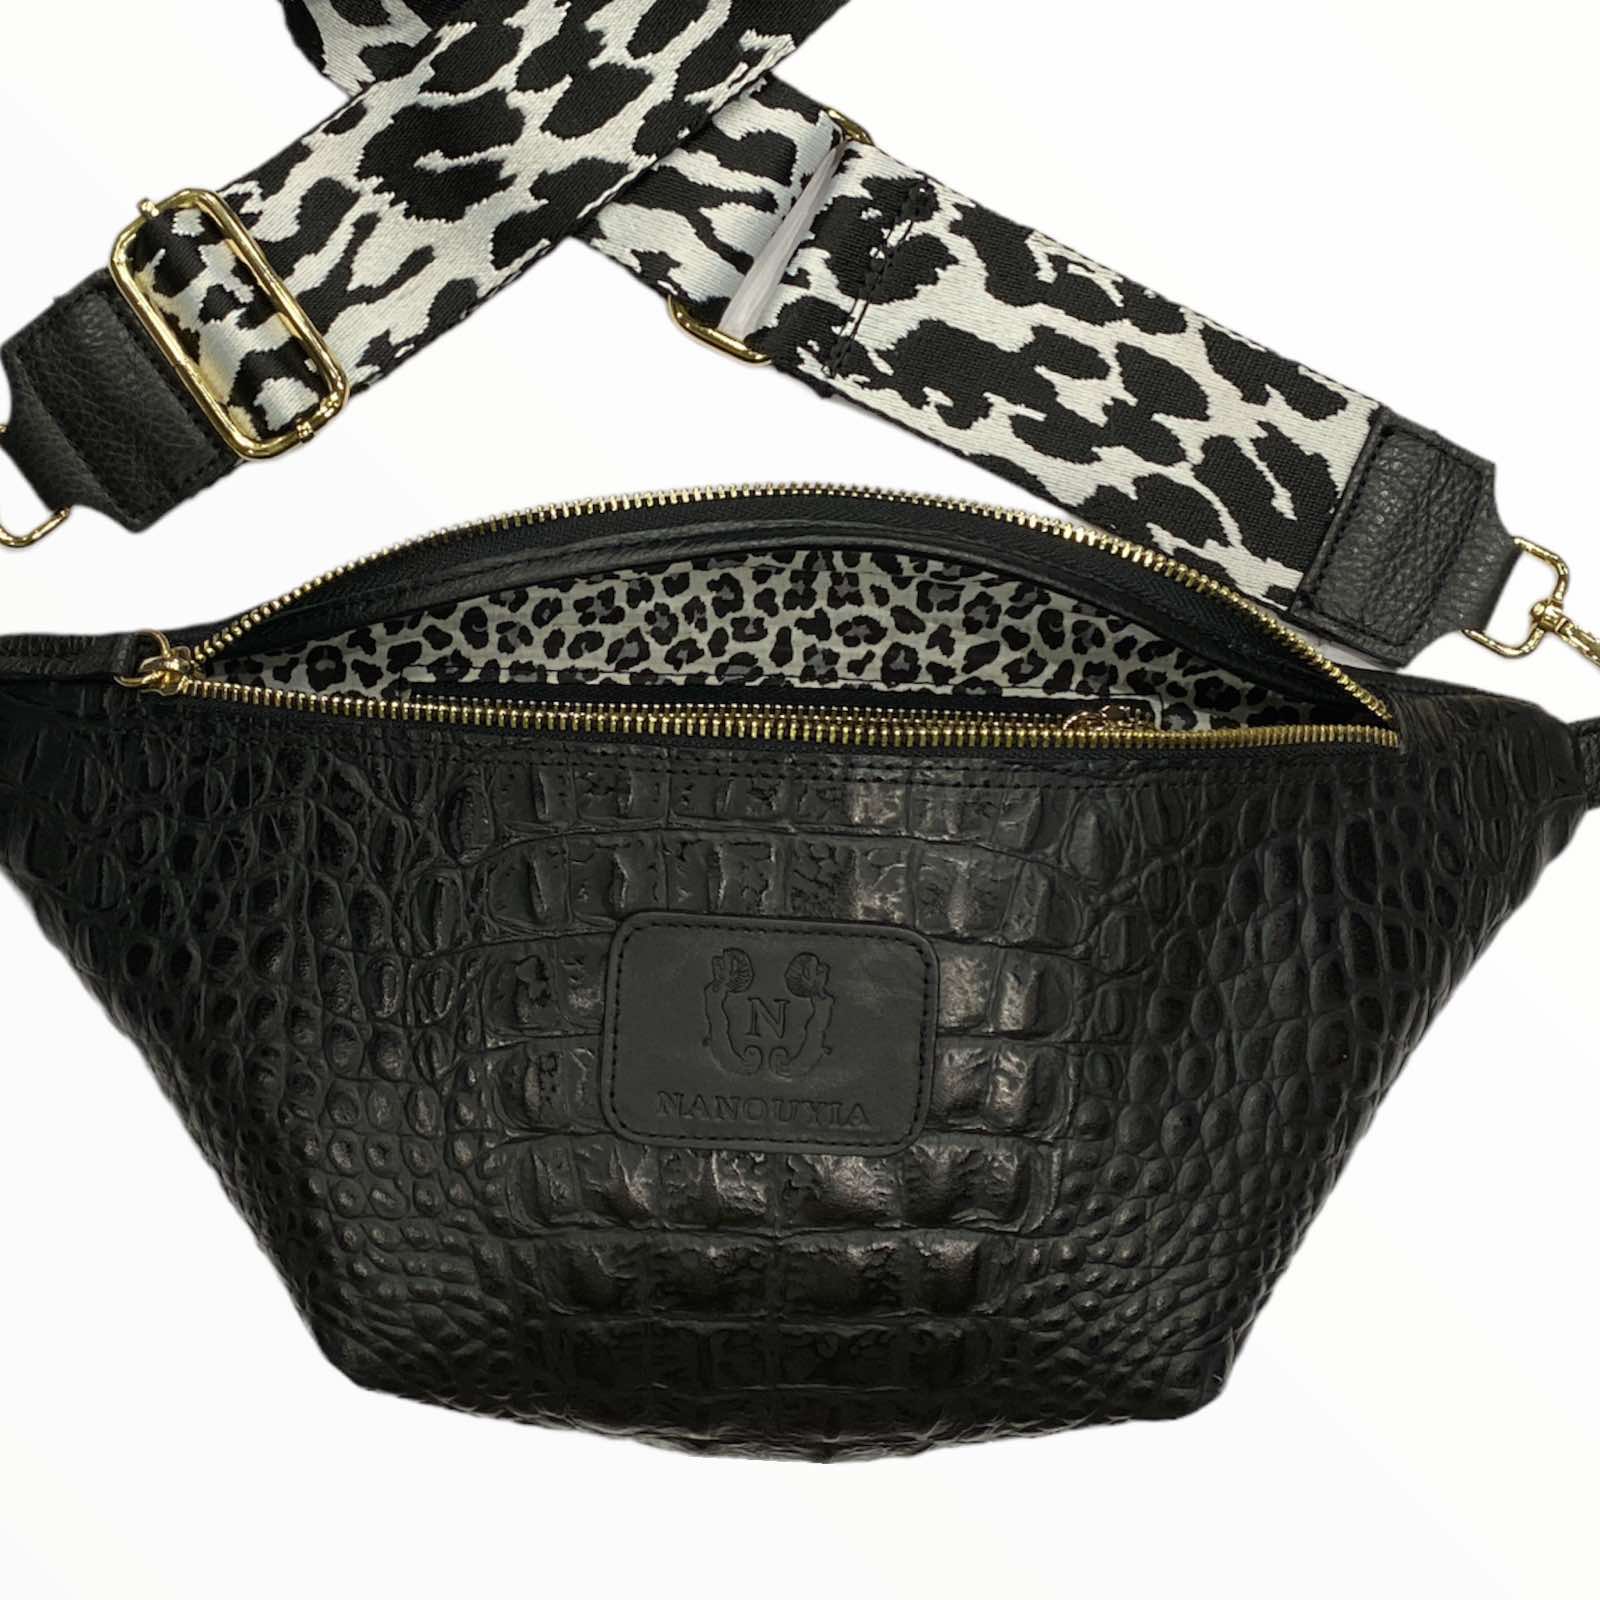 Black alligator-print leather belt bag with black-white strap